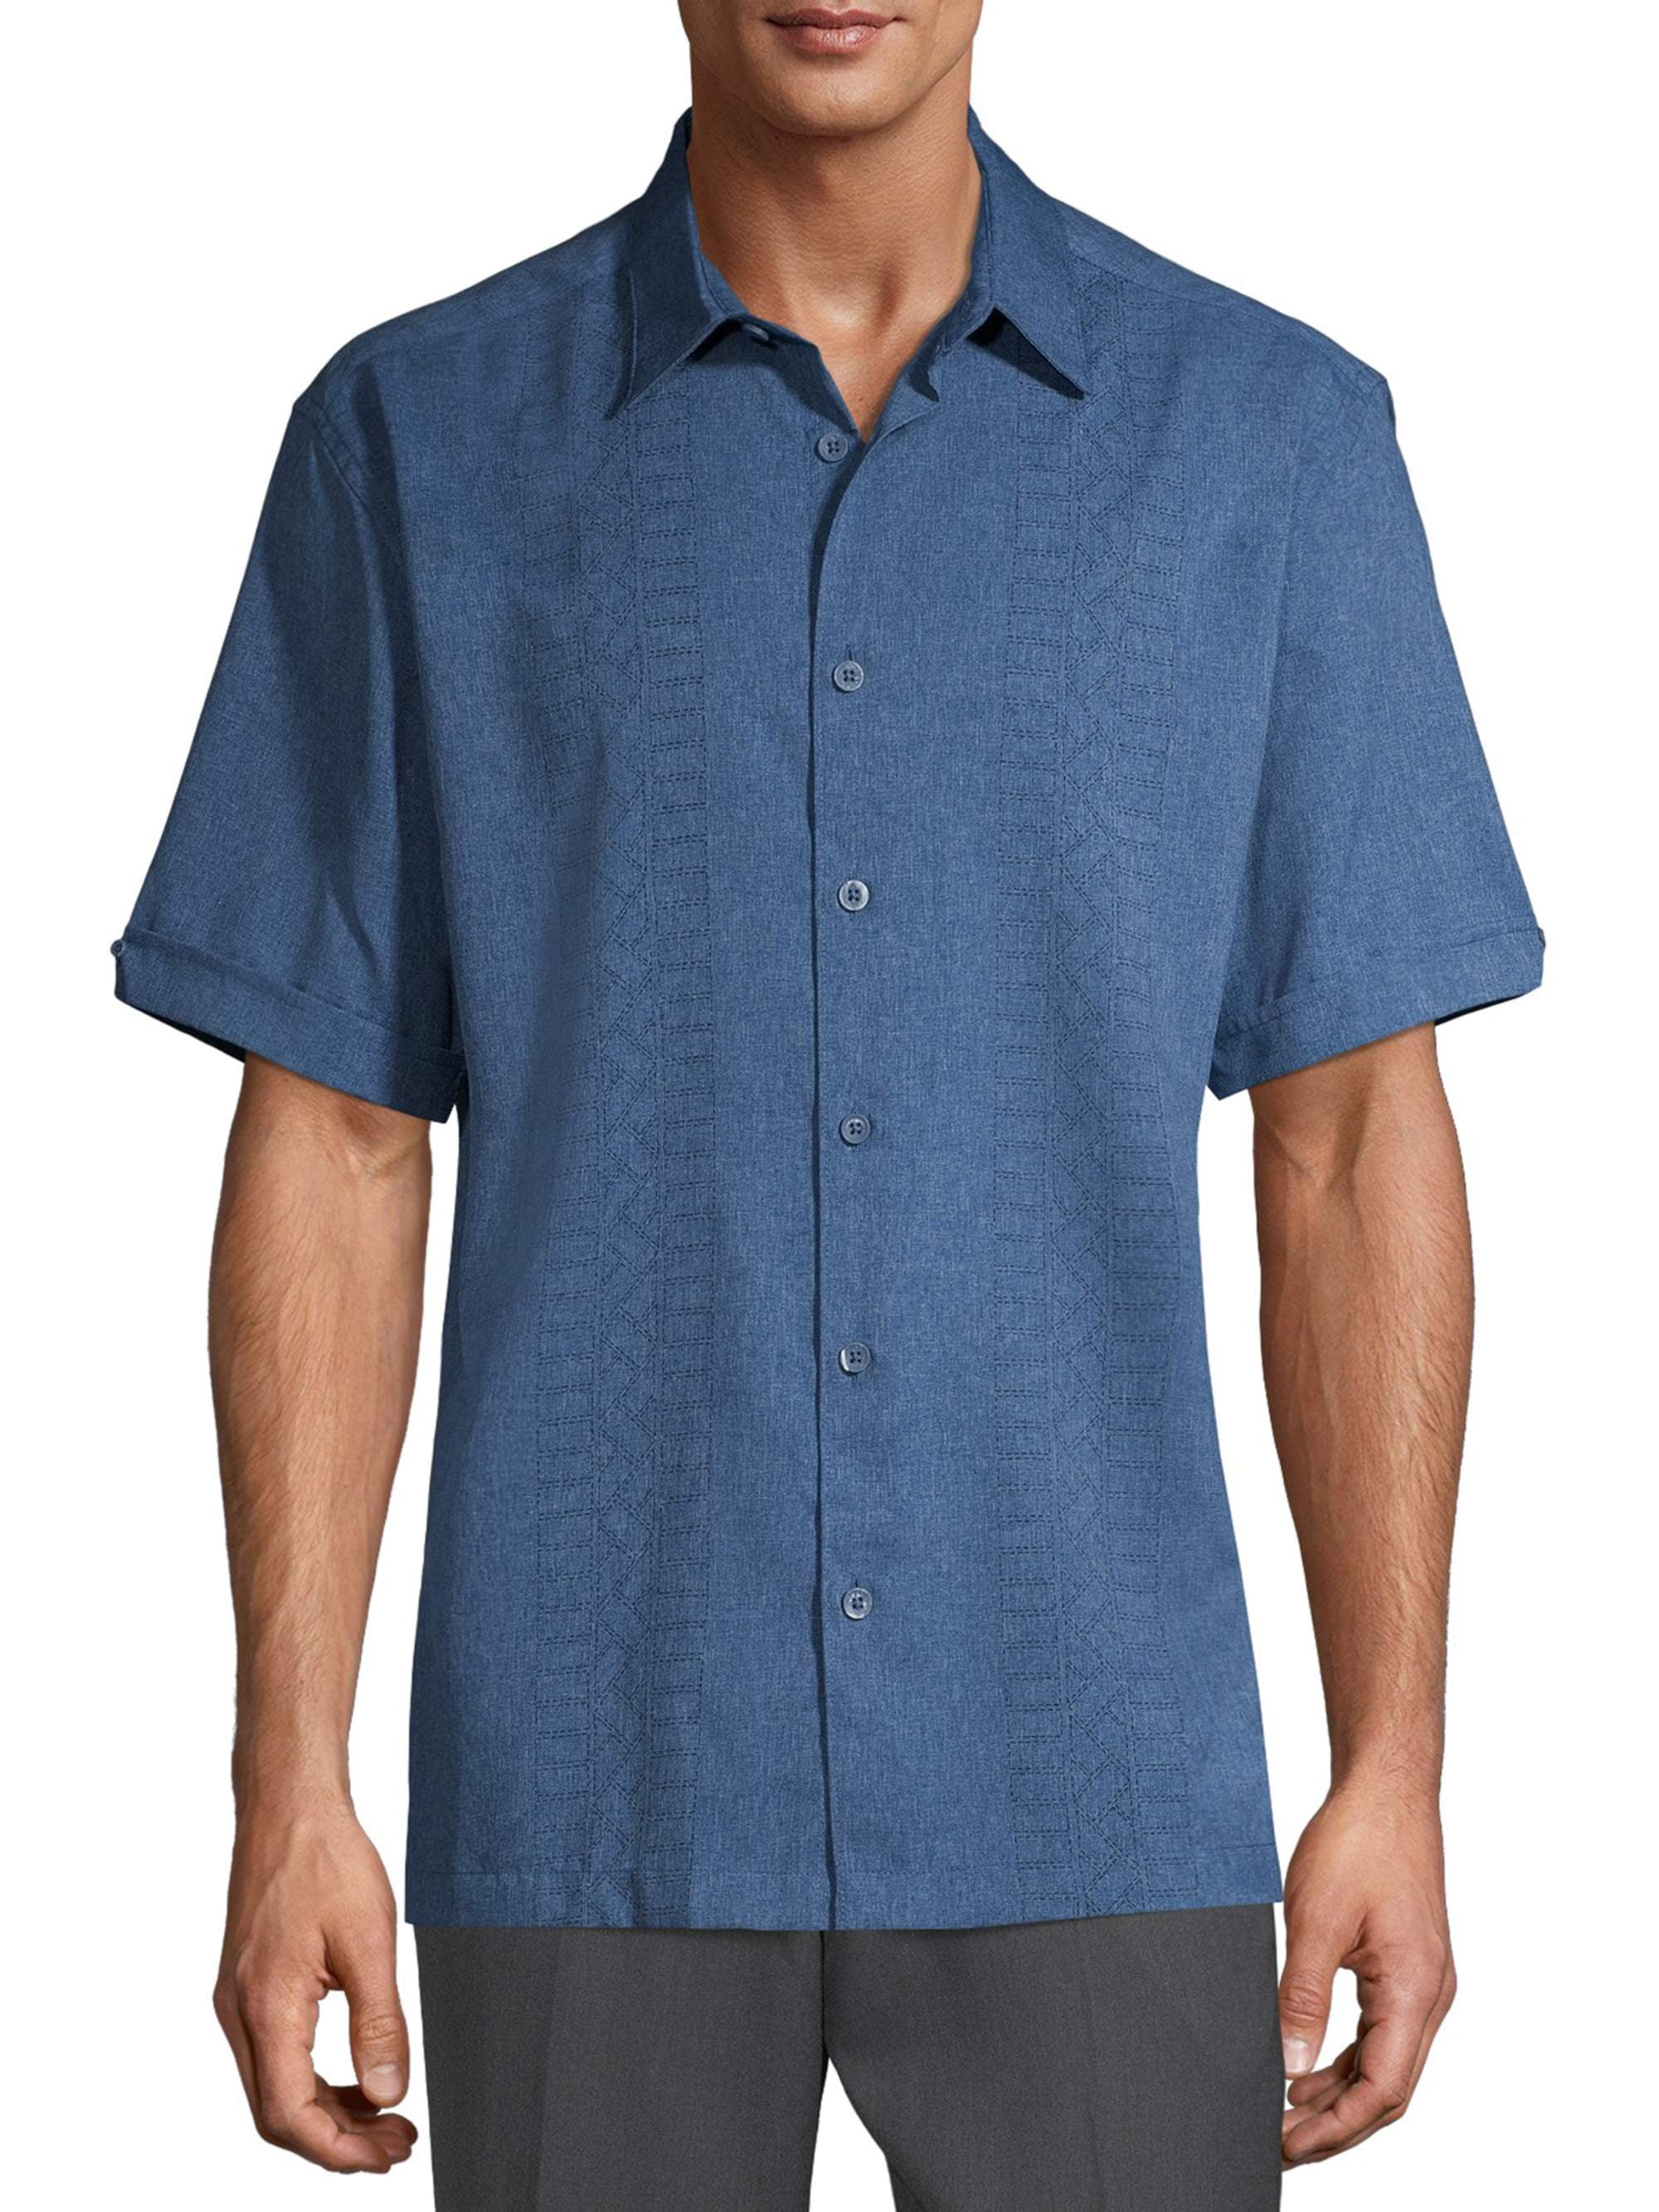 Cafe Luna Men's Short Sleeve Panel Woven Shirt - Walmart.com - Walmart.com